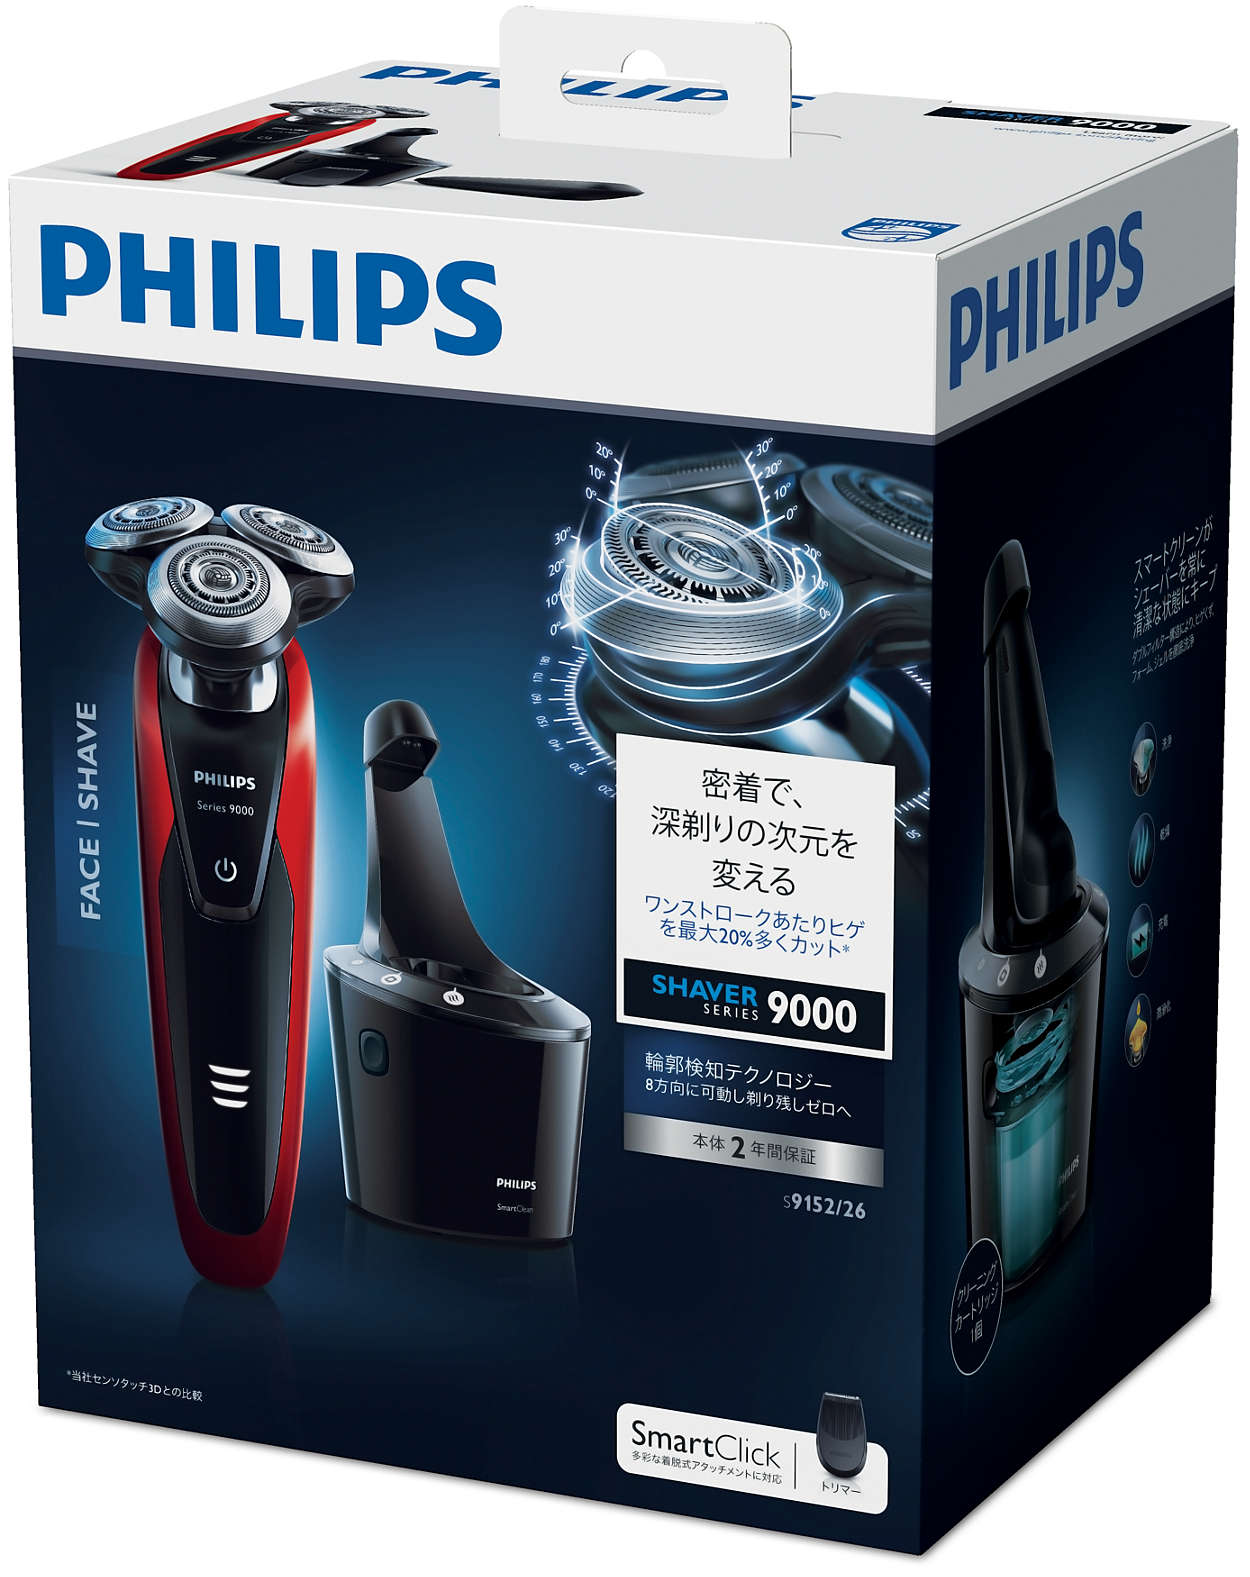 Shaver series 9000 ウェット＆ドライ電気シェーバー S9152/26 | Philips